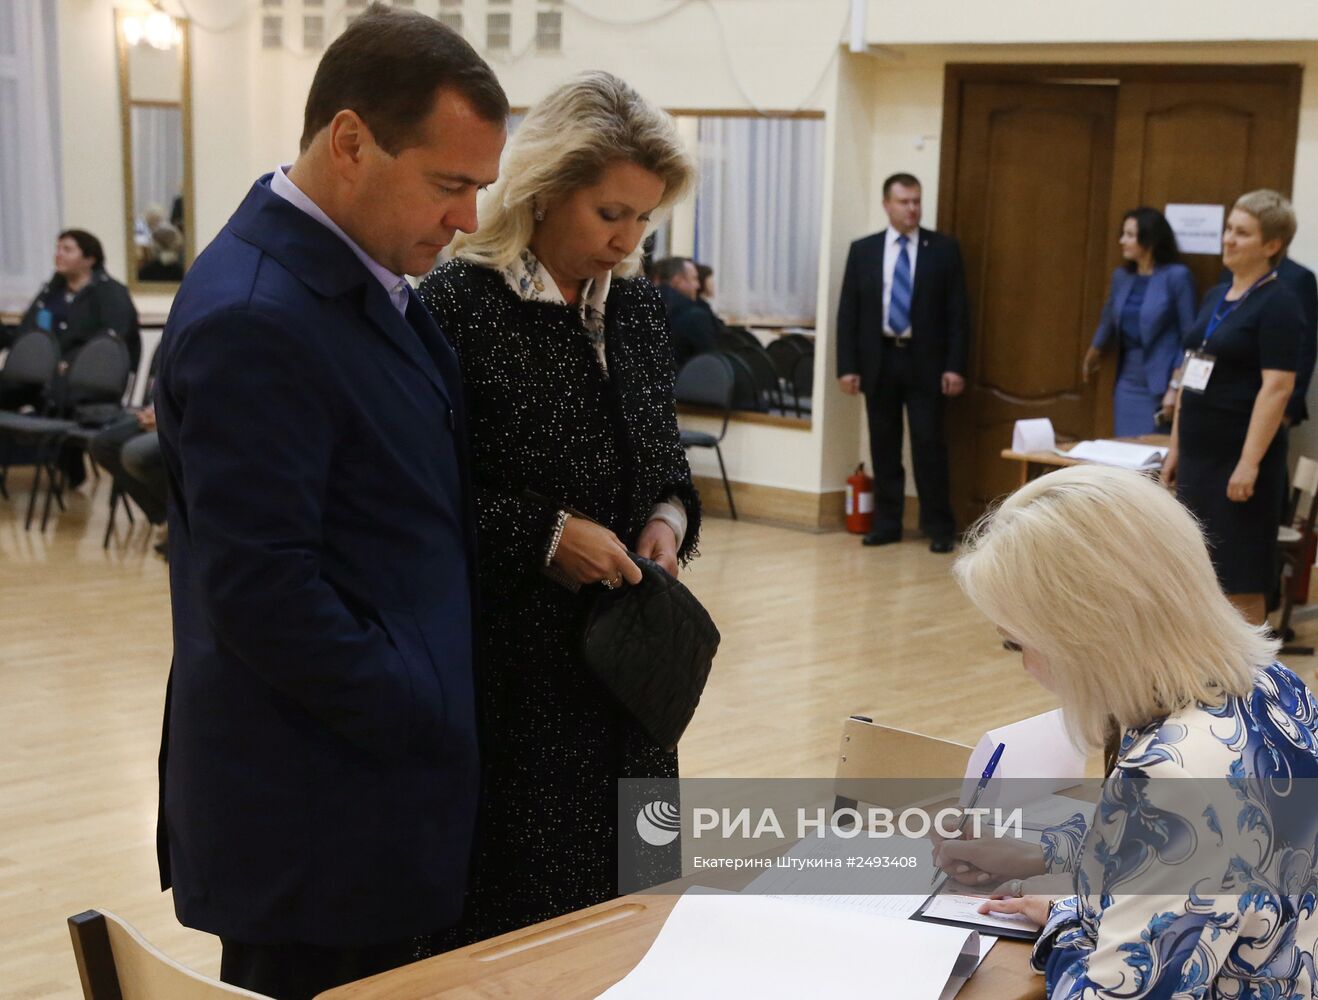 Д.Медведев проголосовал на выборах в Мосгордуму